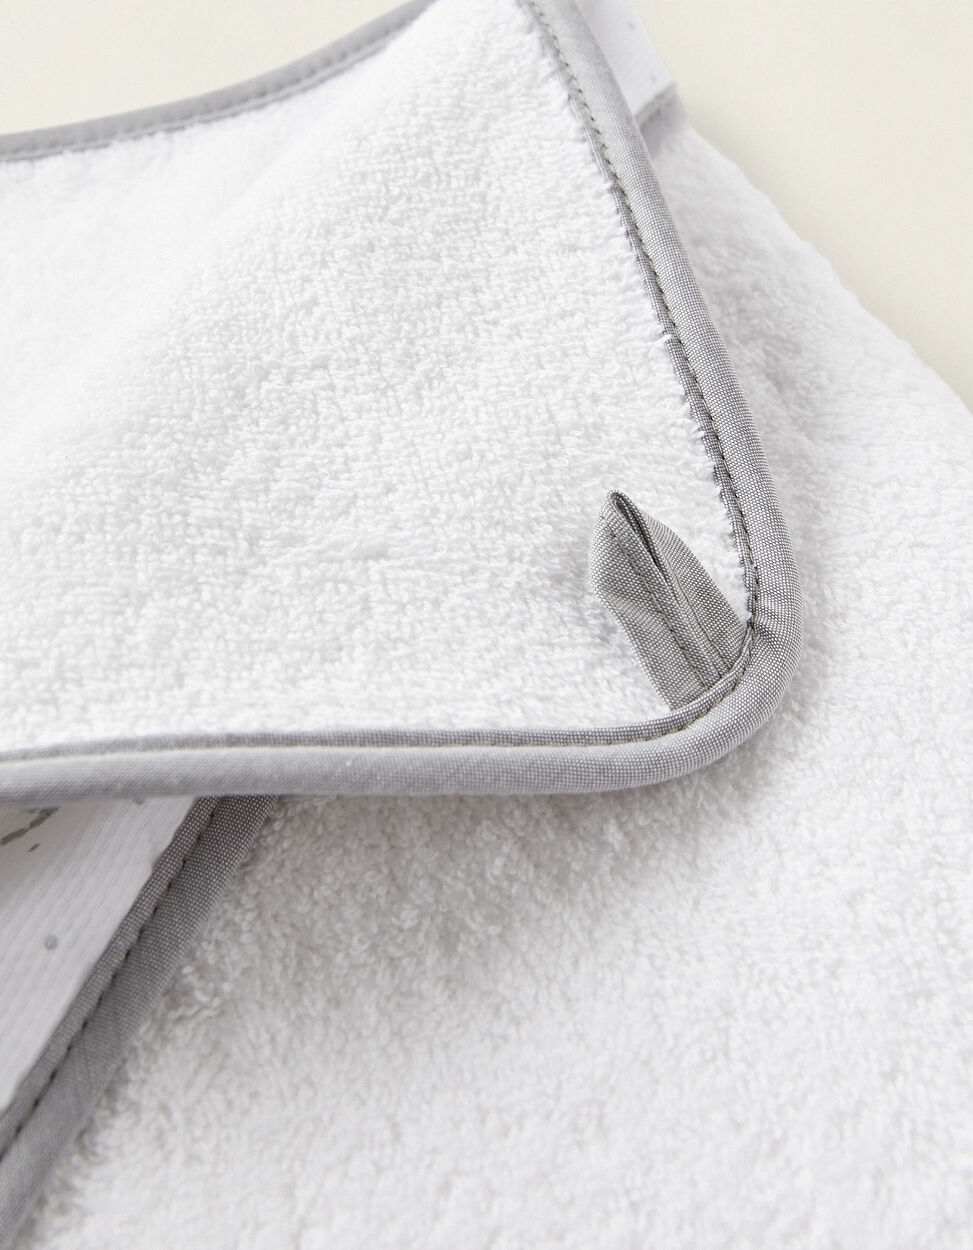 Bath Towel 70x70cm, Silver Moon, by Rebelde